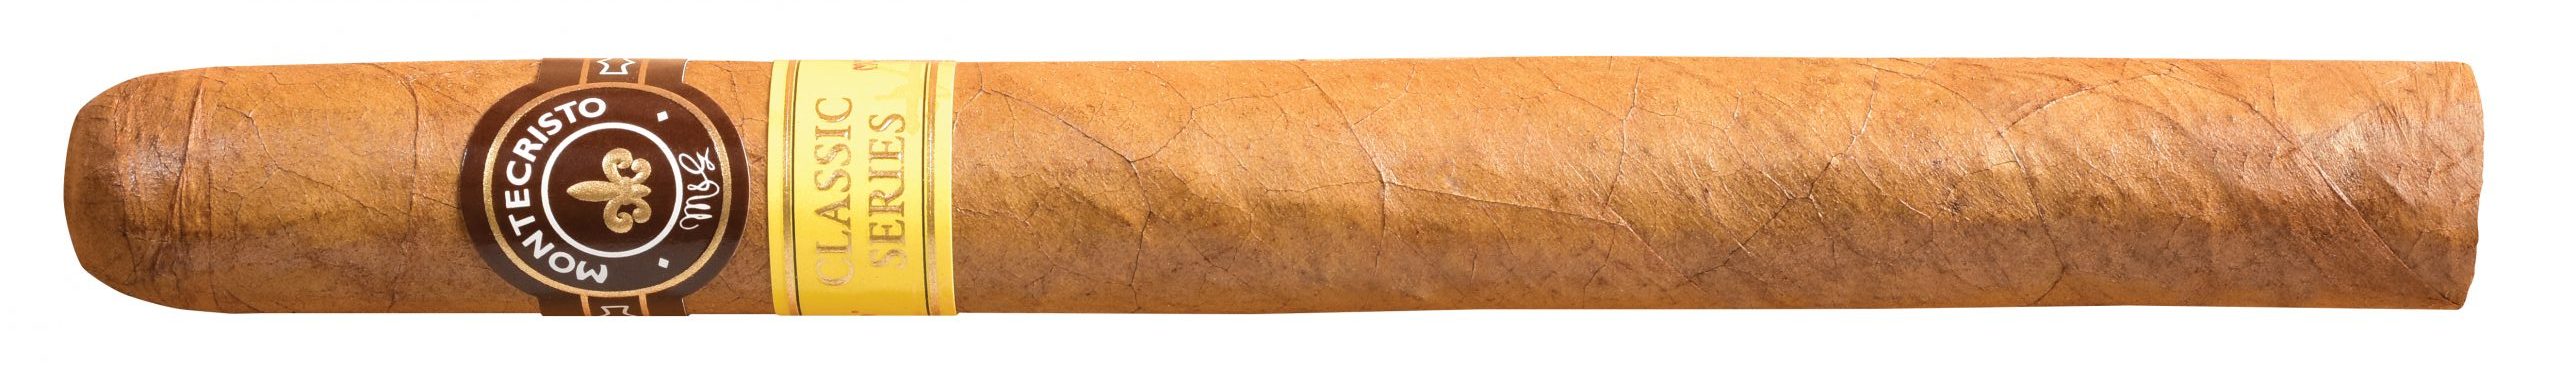 montecristo classic number 1 single cigar